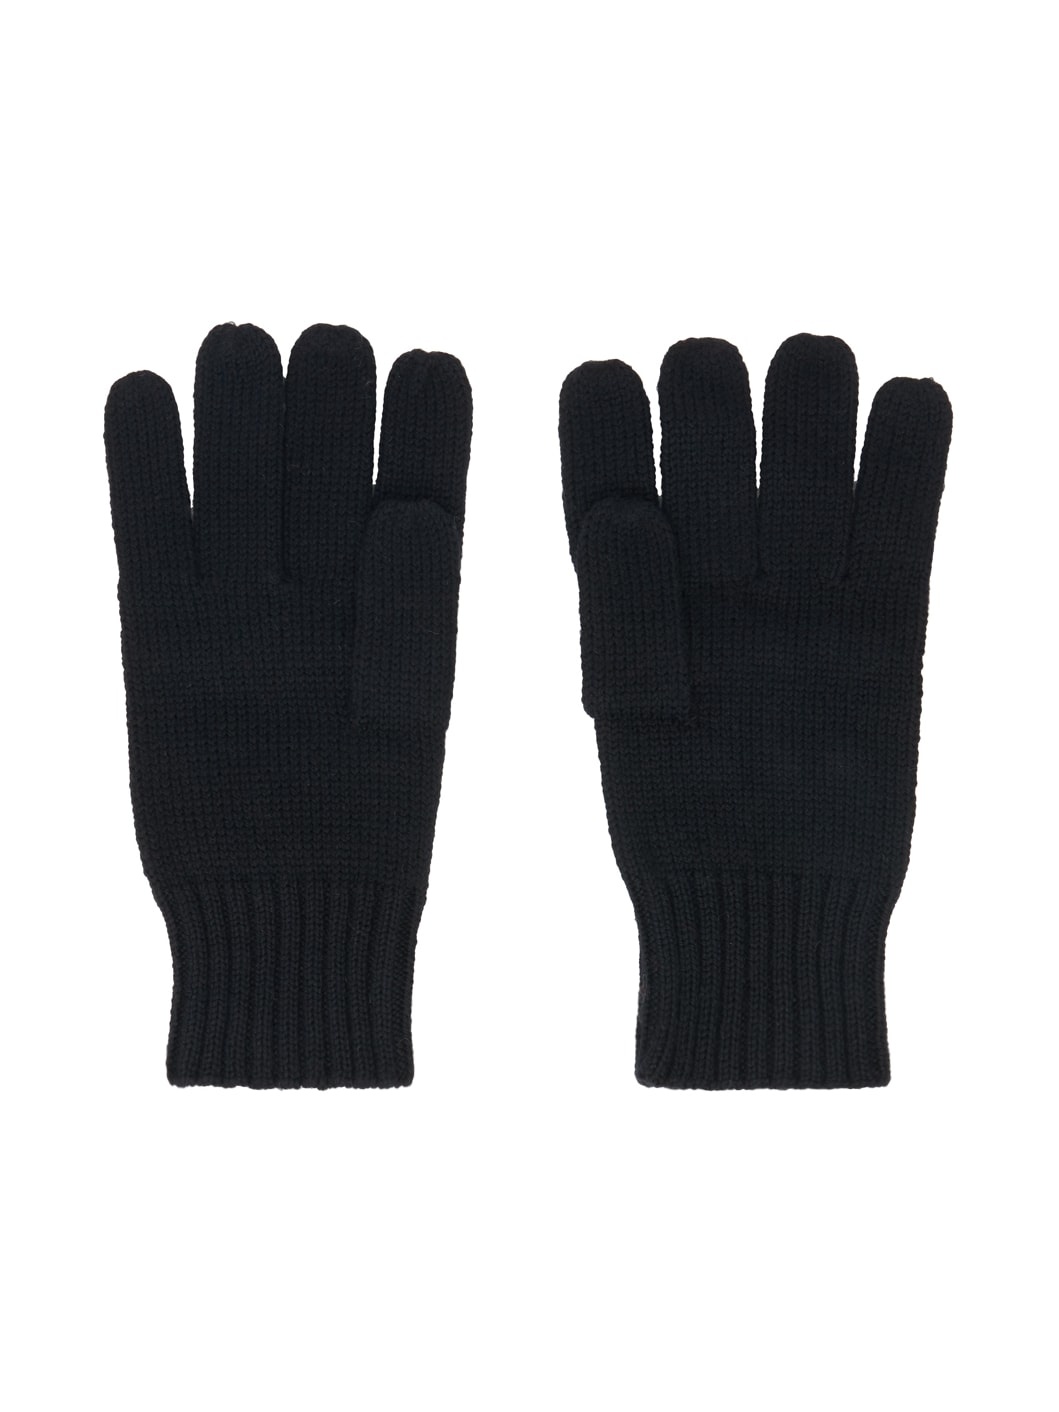 Black Poppy Gloves - 2